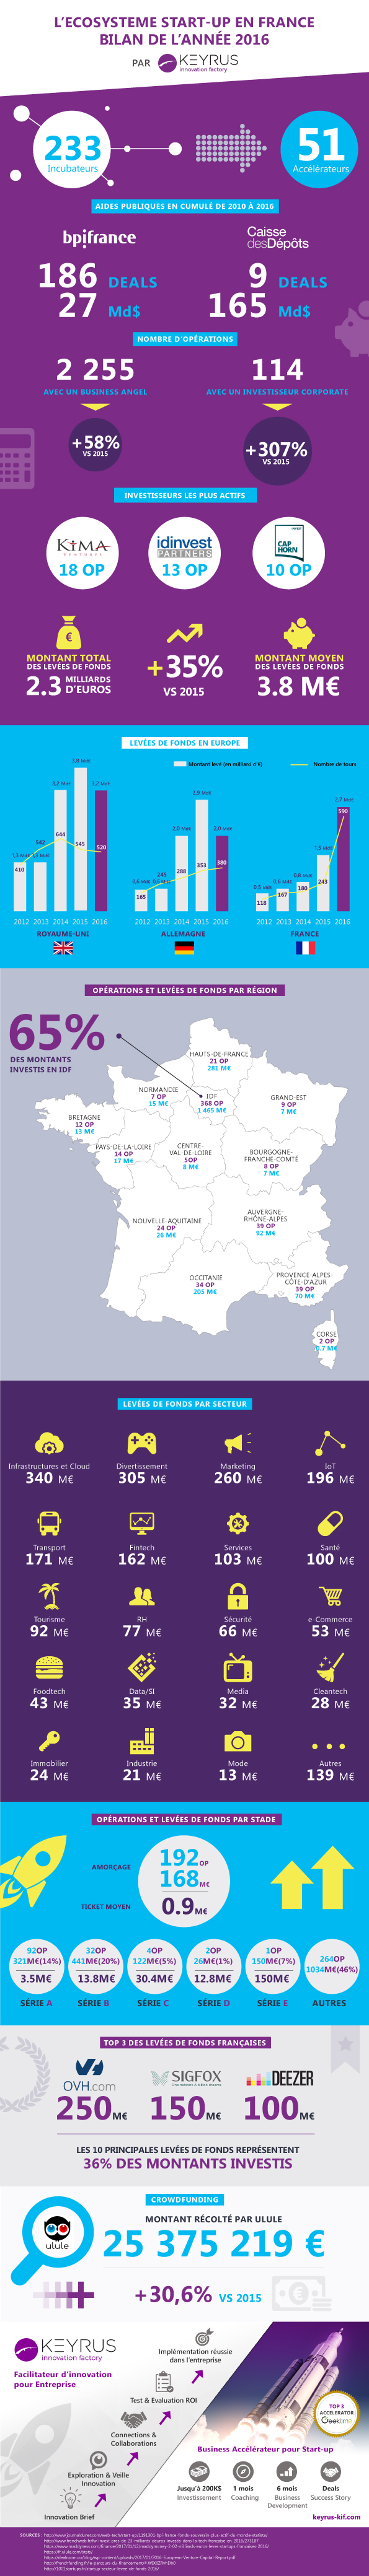 Infographie KIF - L'écosystème startup en France 2016.jpg